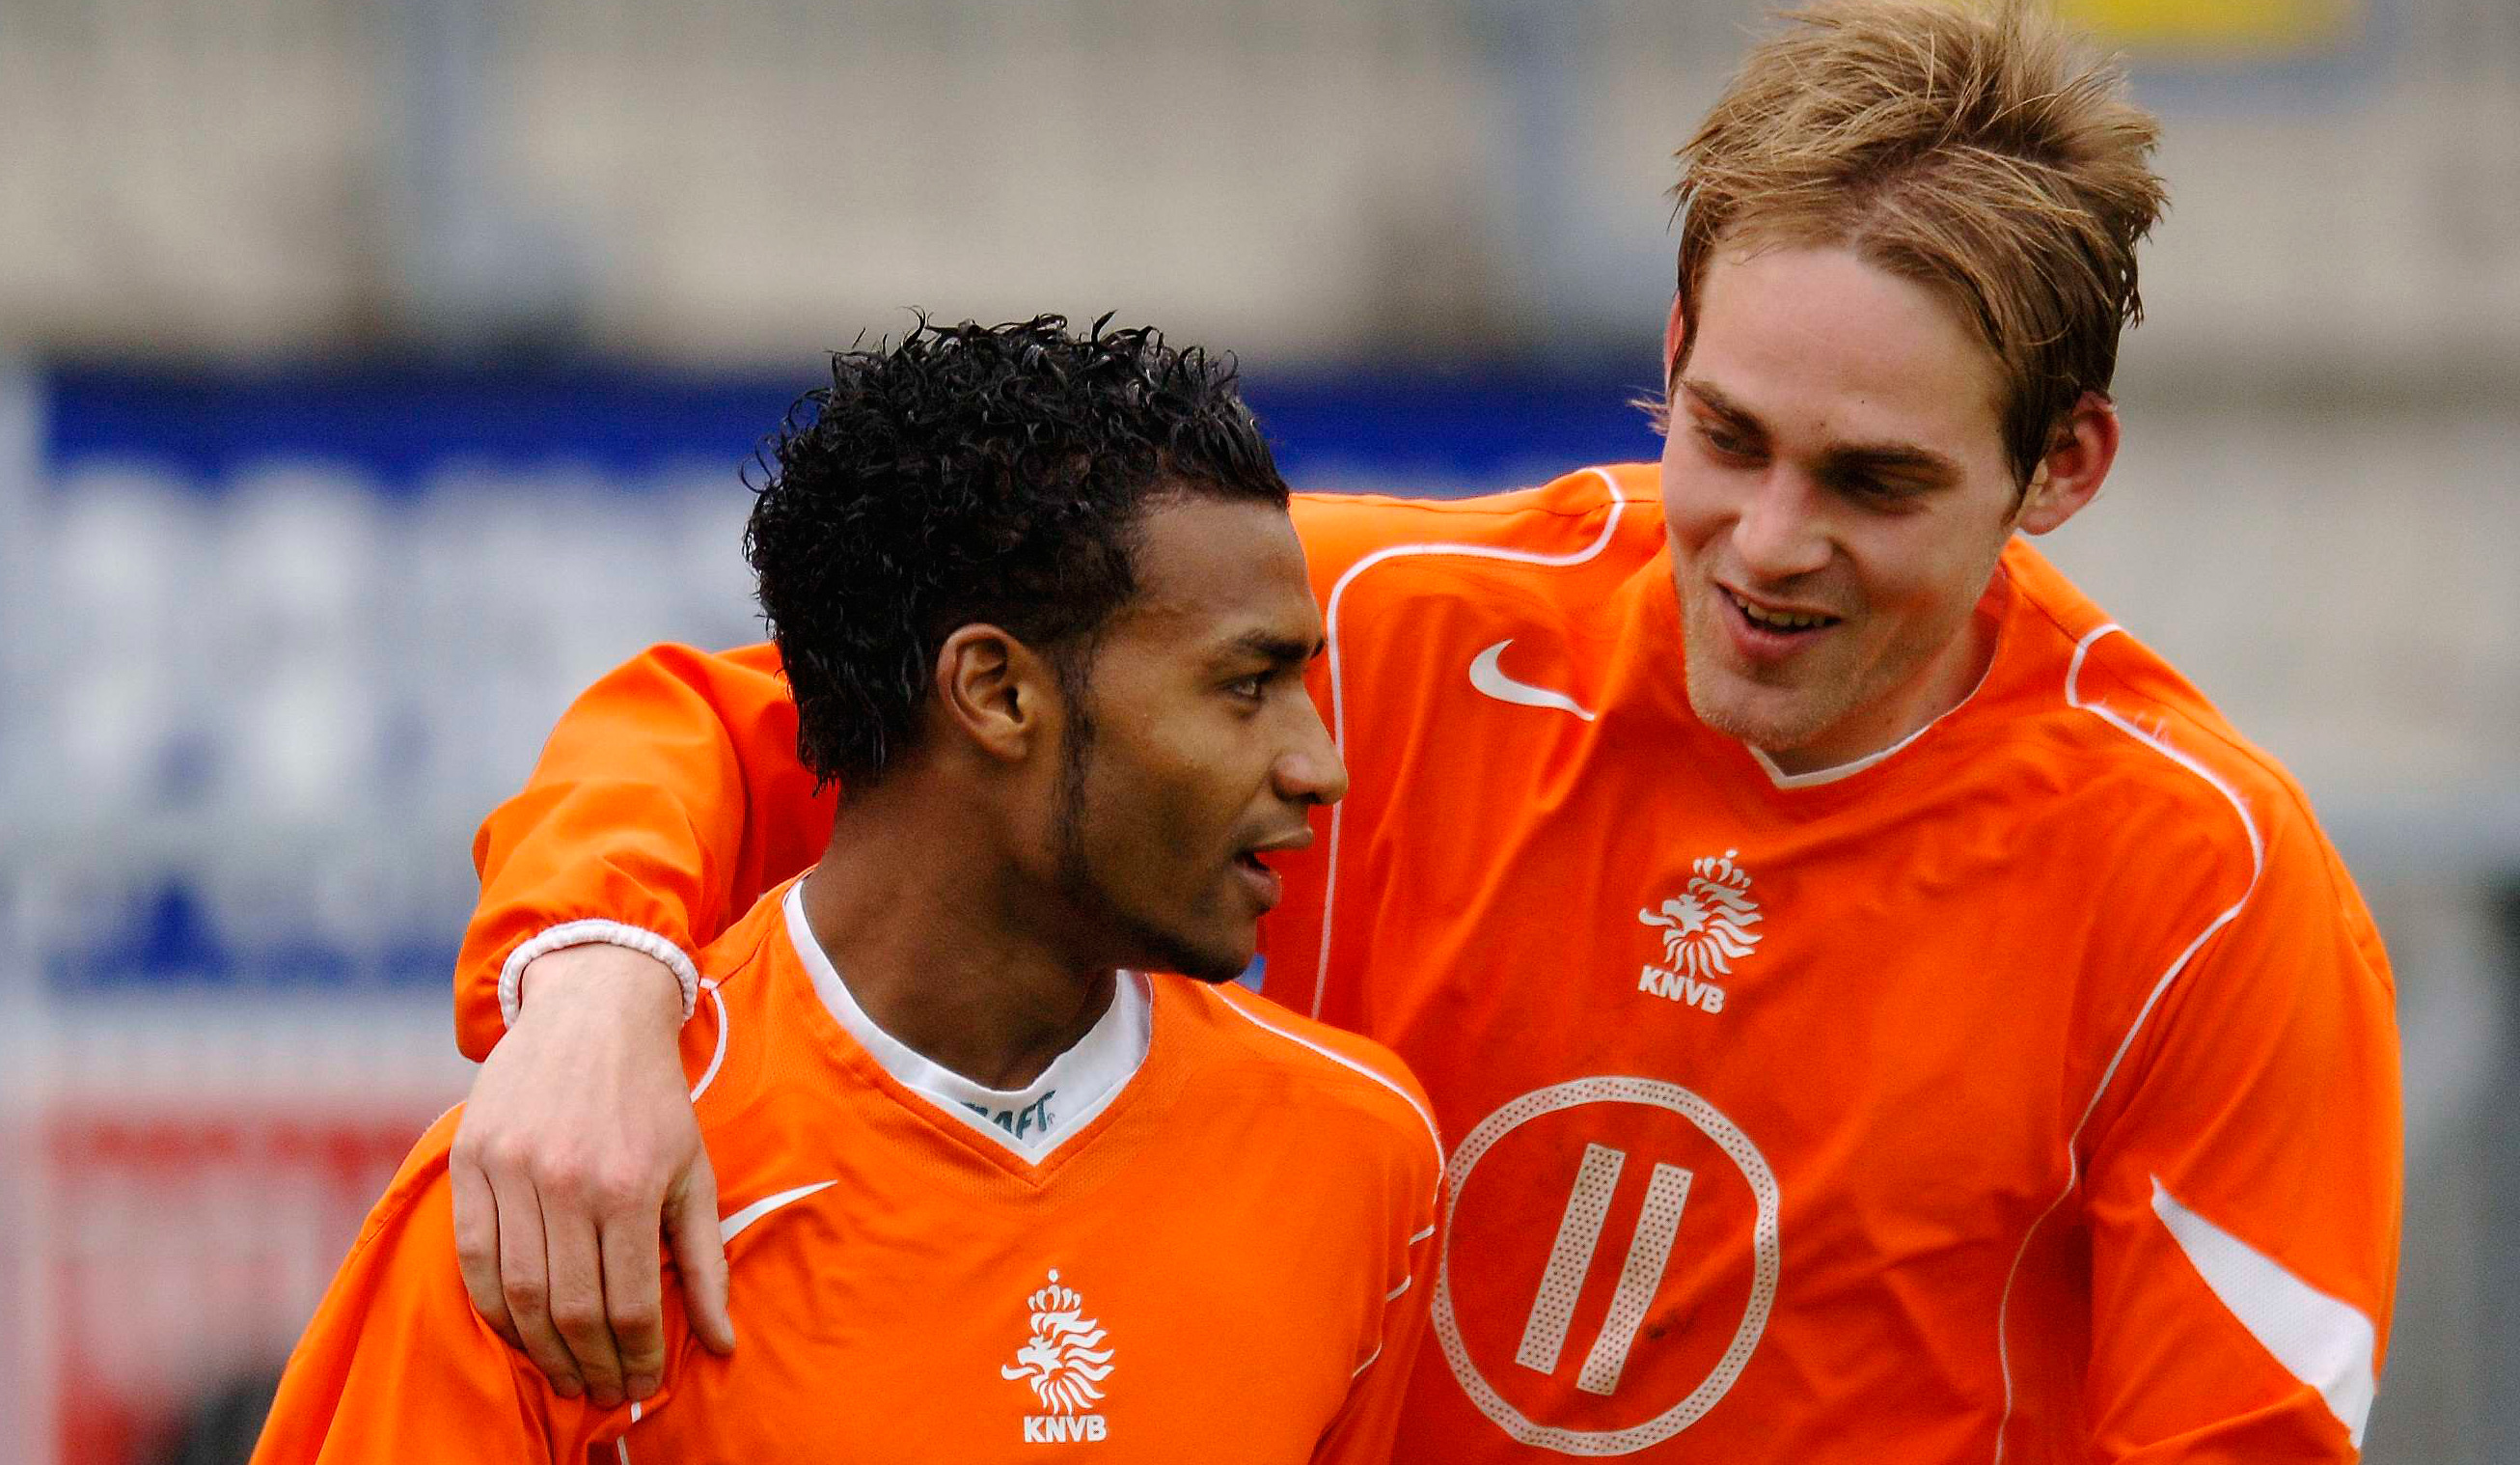 Prince Rajcomar (links) en Arjan Wisse in het shirt van Jong Oranje. Beide spelers kregen niet bepaald een glansrijke carrière.